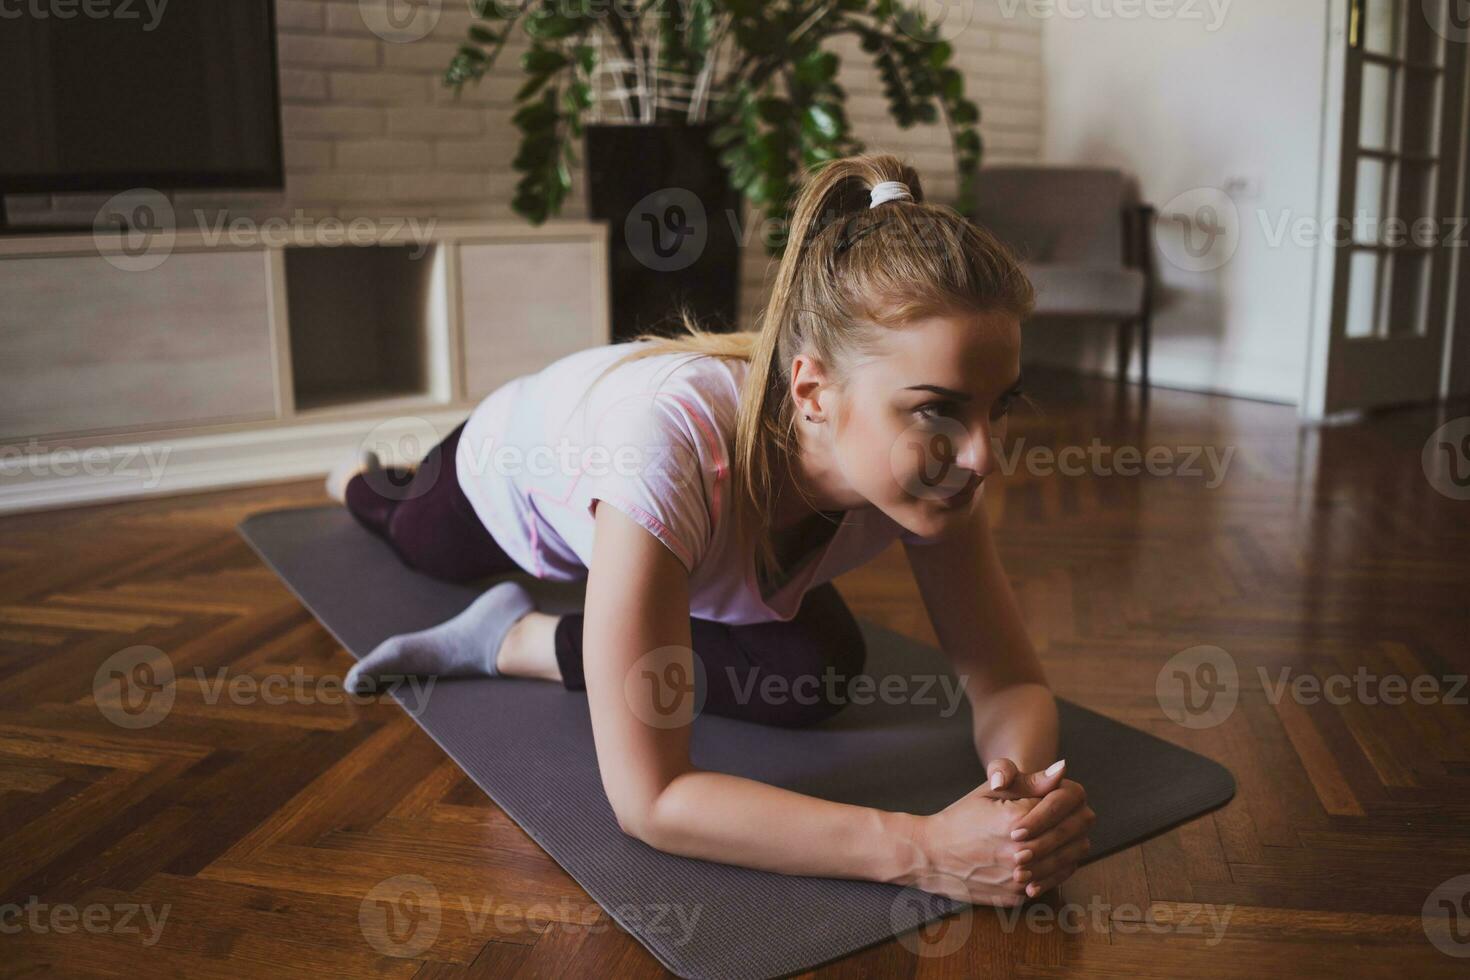 jovem mulher praticando pilates e ioga exercícios às casa foto